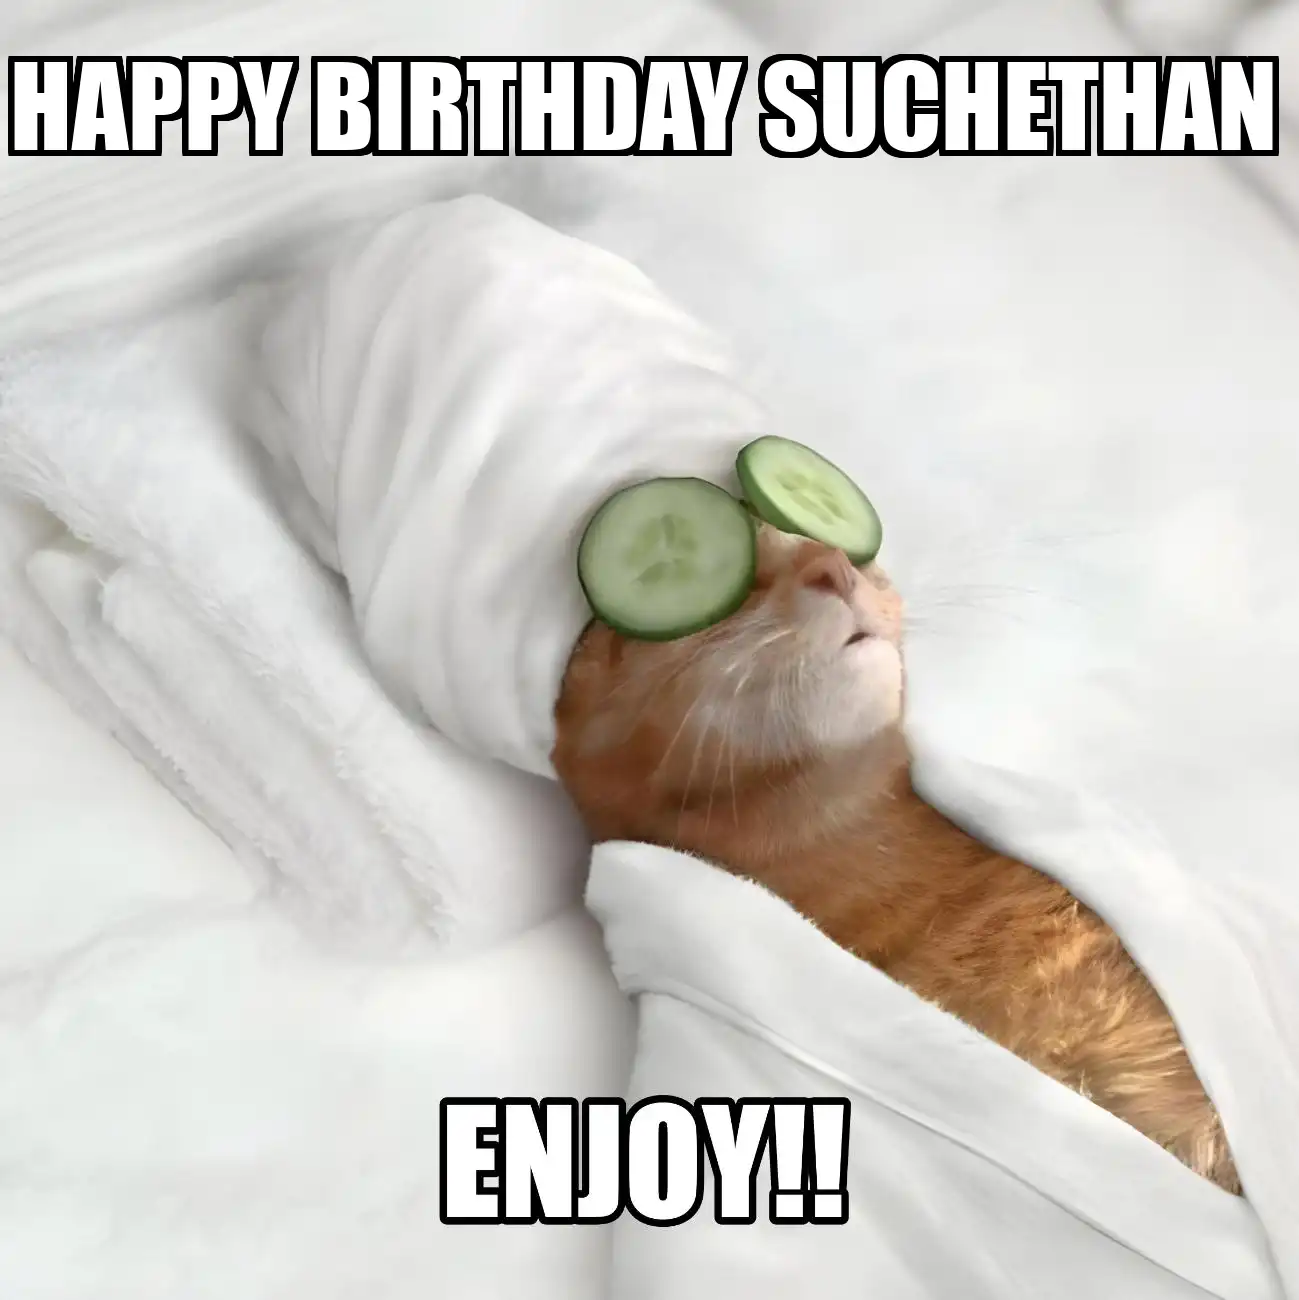 Happy Birthday Suchethan Enjoy Cat Meme